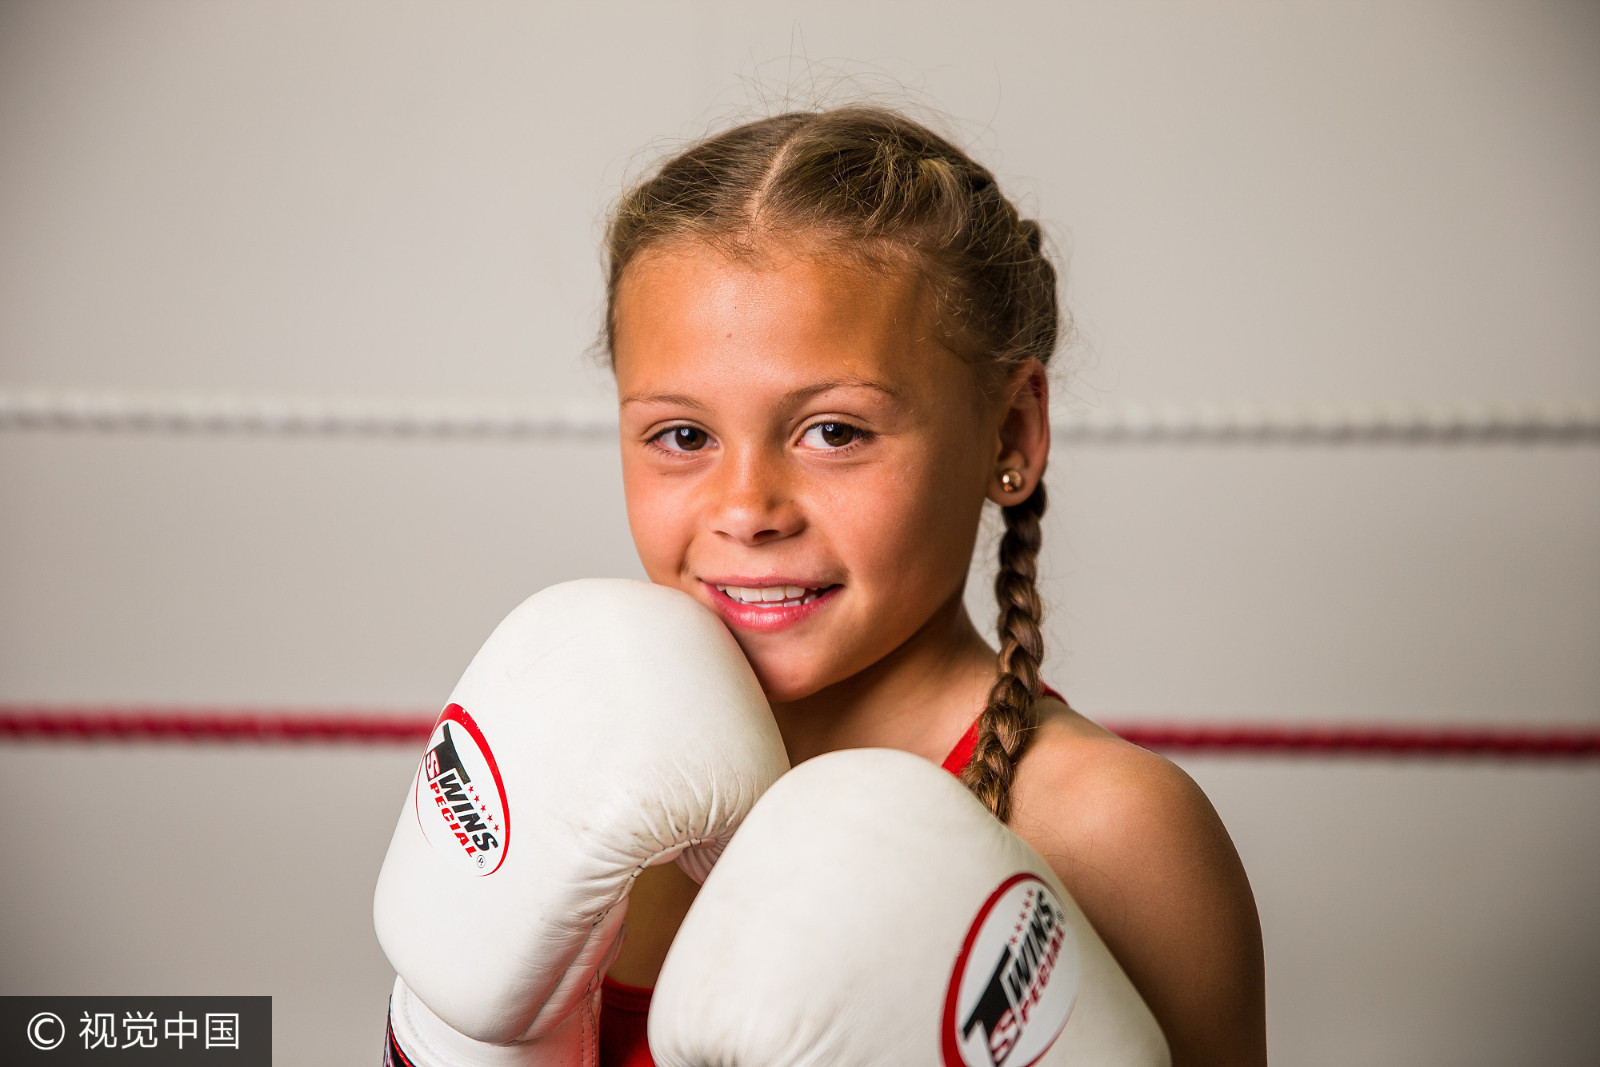 英国小女孩从小爱打架 十岁时成跆拳道世界冠